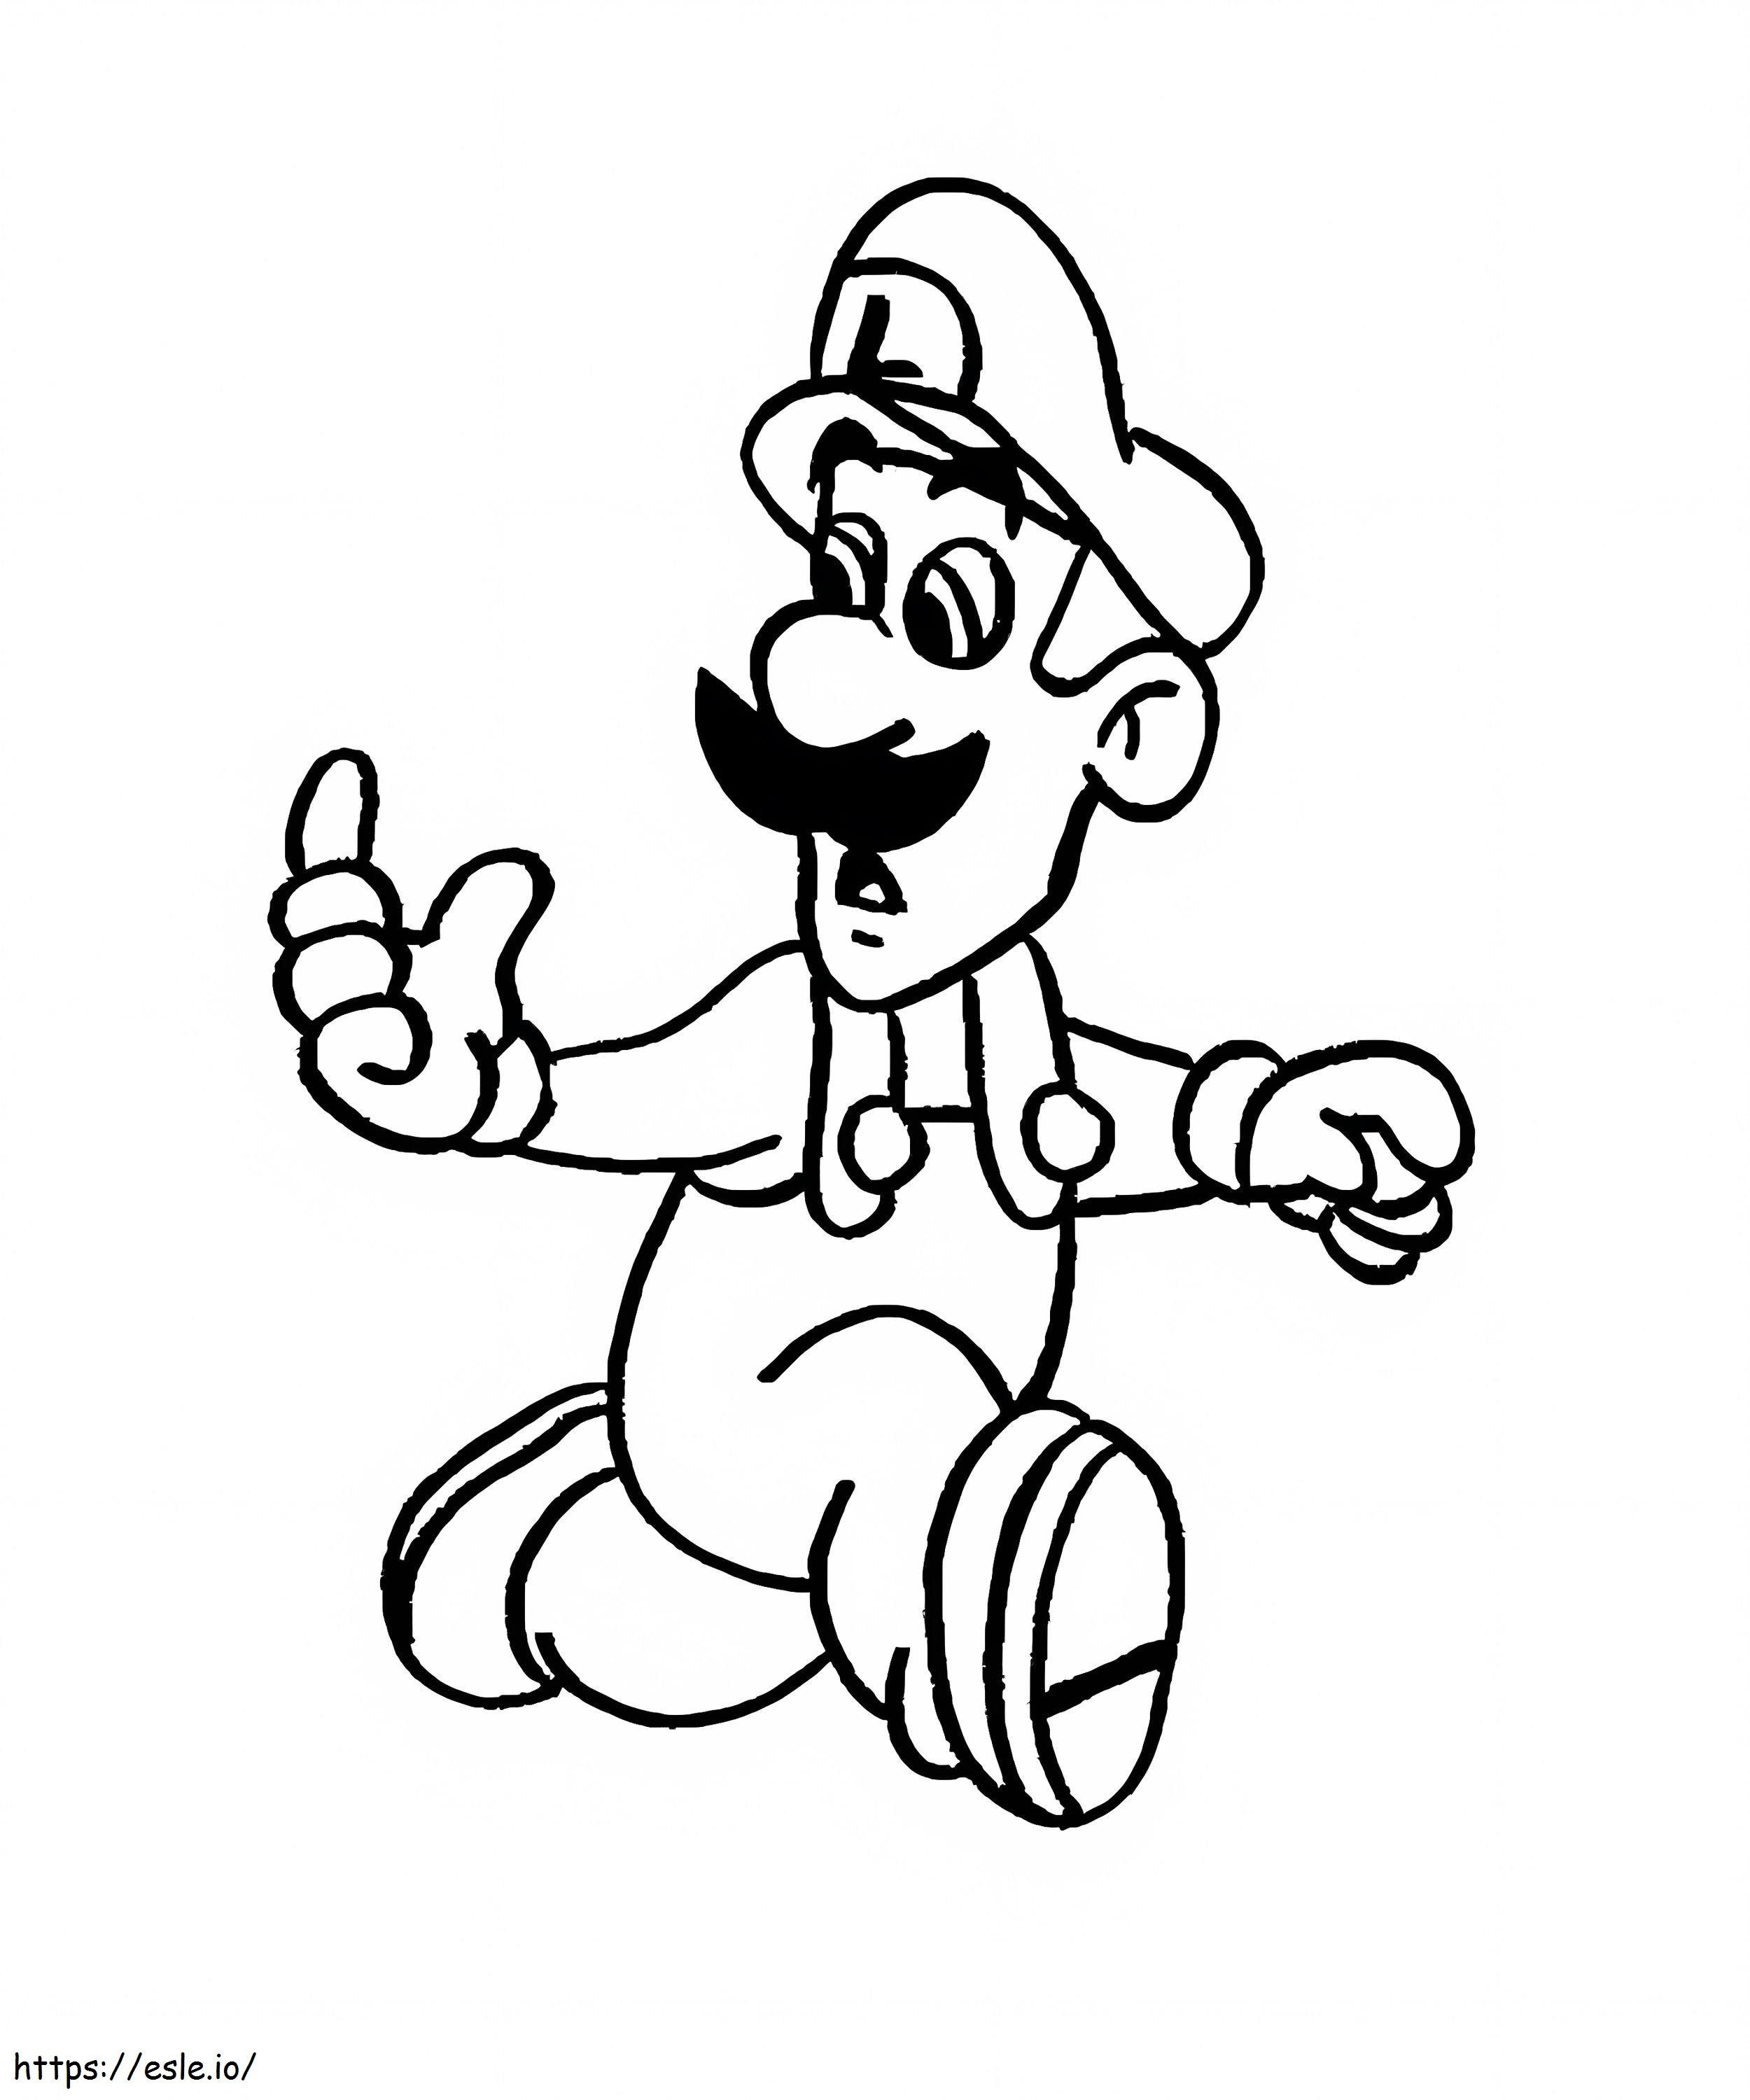 Luigi De Super Mario 5 da colorare